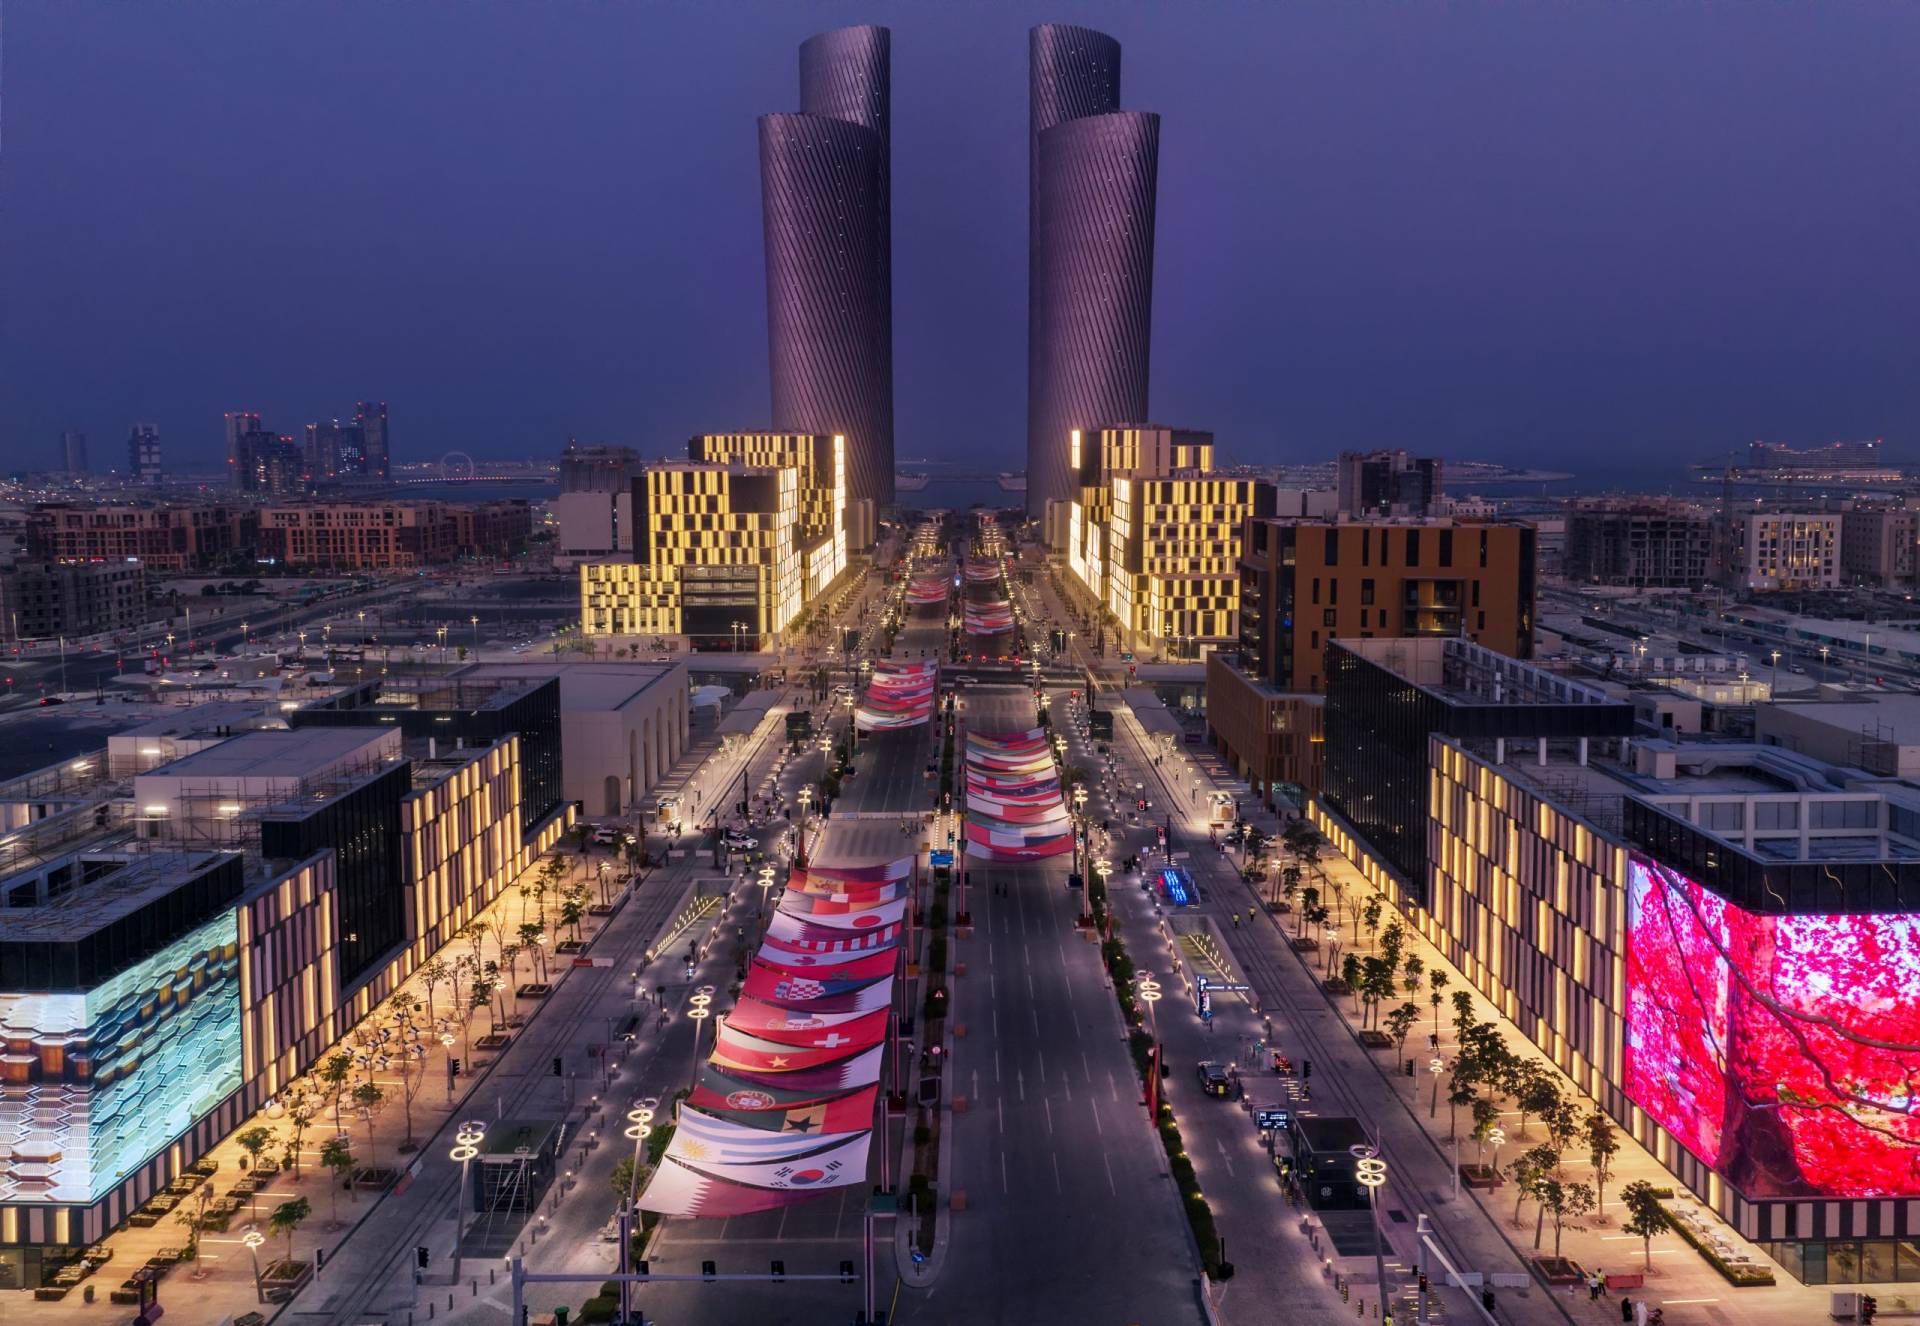 Lusail: Future Capital of Islamic Culture 2030